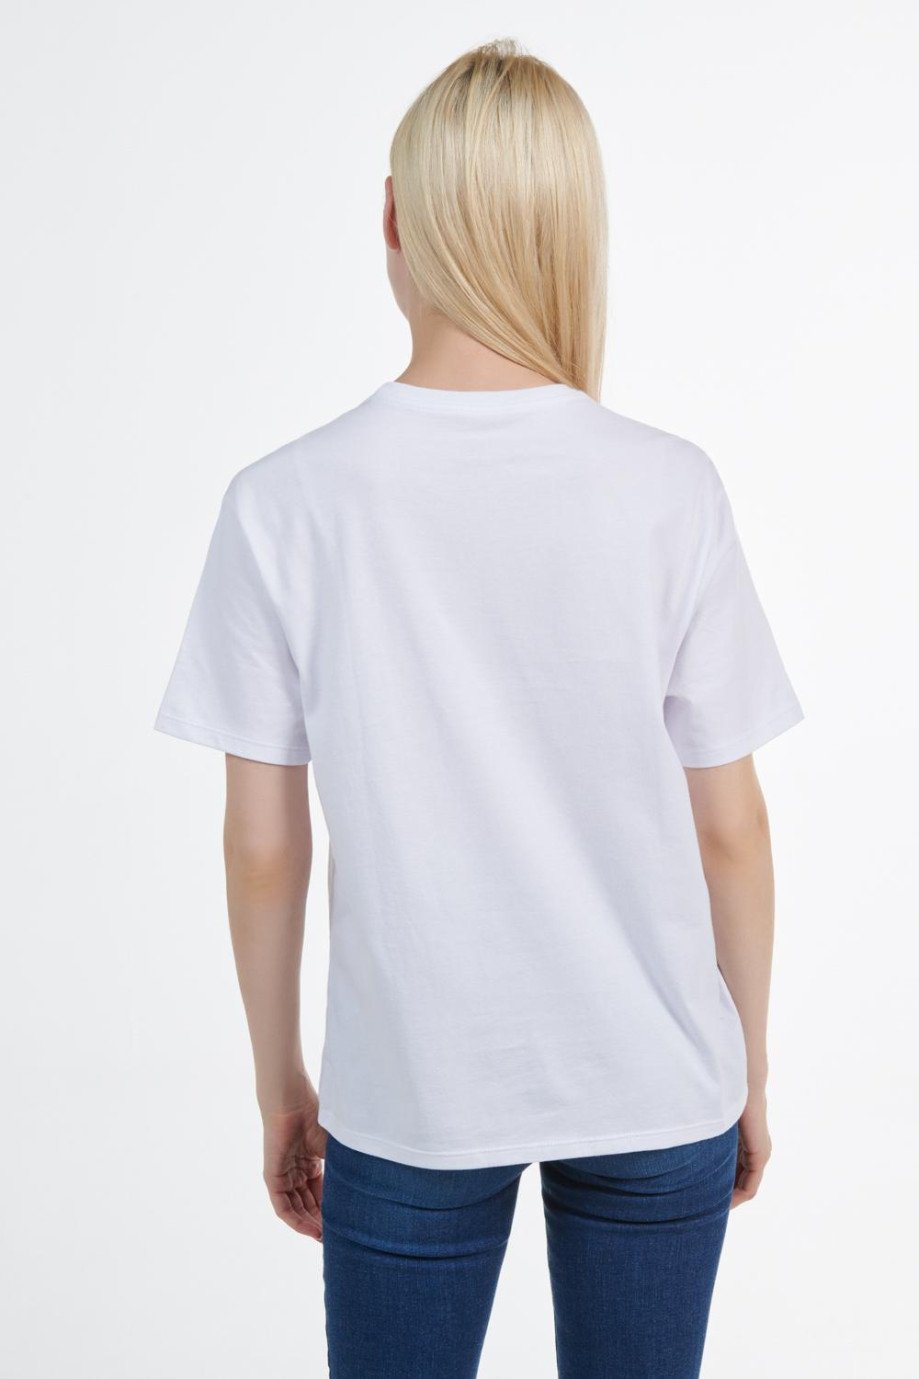 Camiseta blanca con estampado de Escandalosos y manga corta